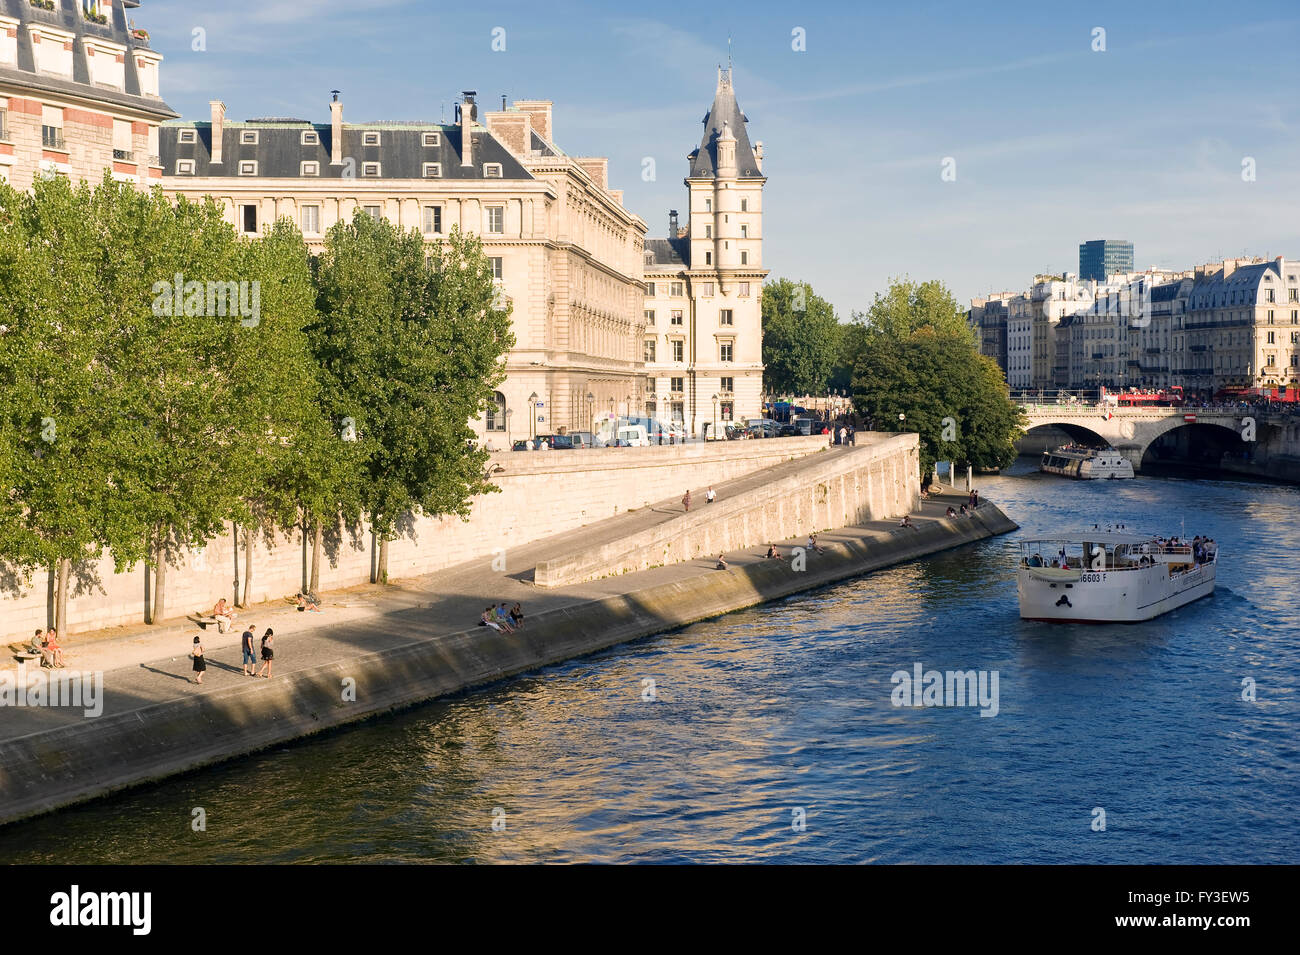 Quai des Orfevres, Banks of the Seine, Ile de la Cite, Paris, France Stock Photo